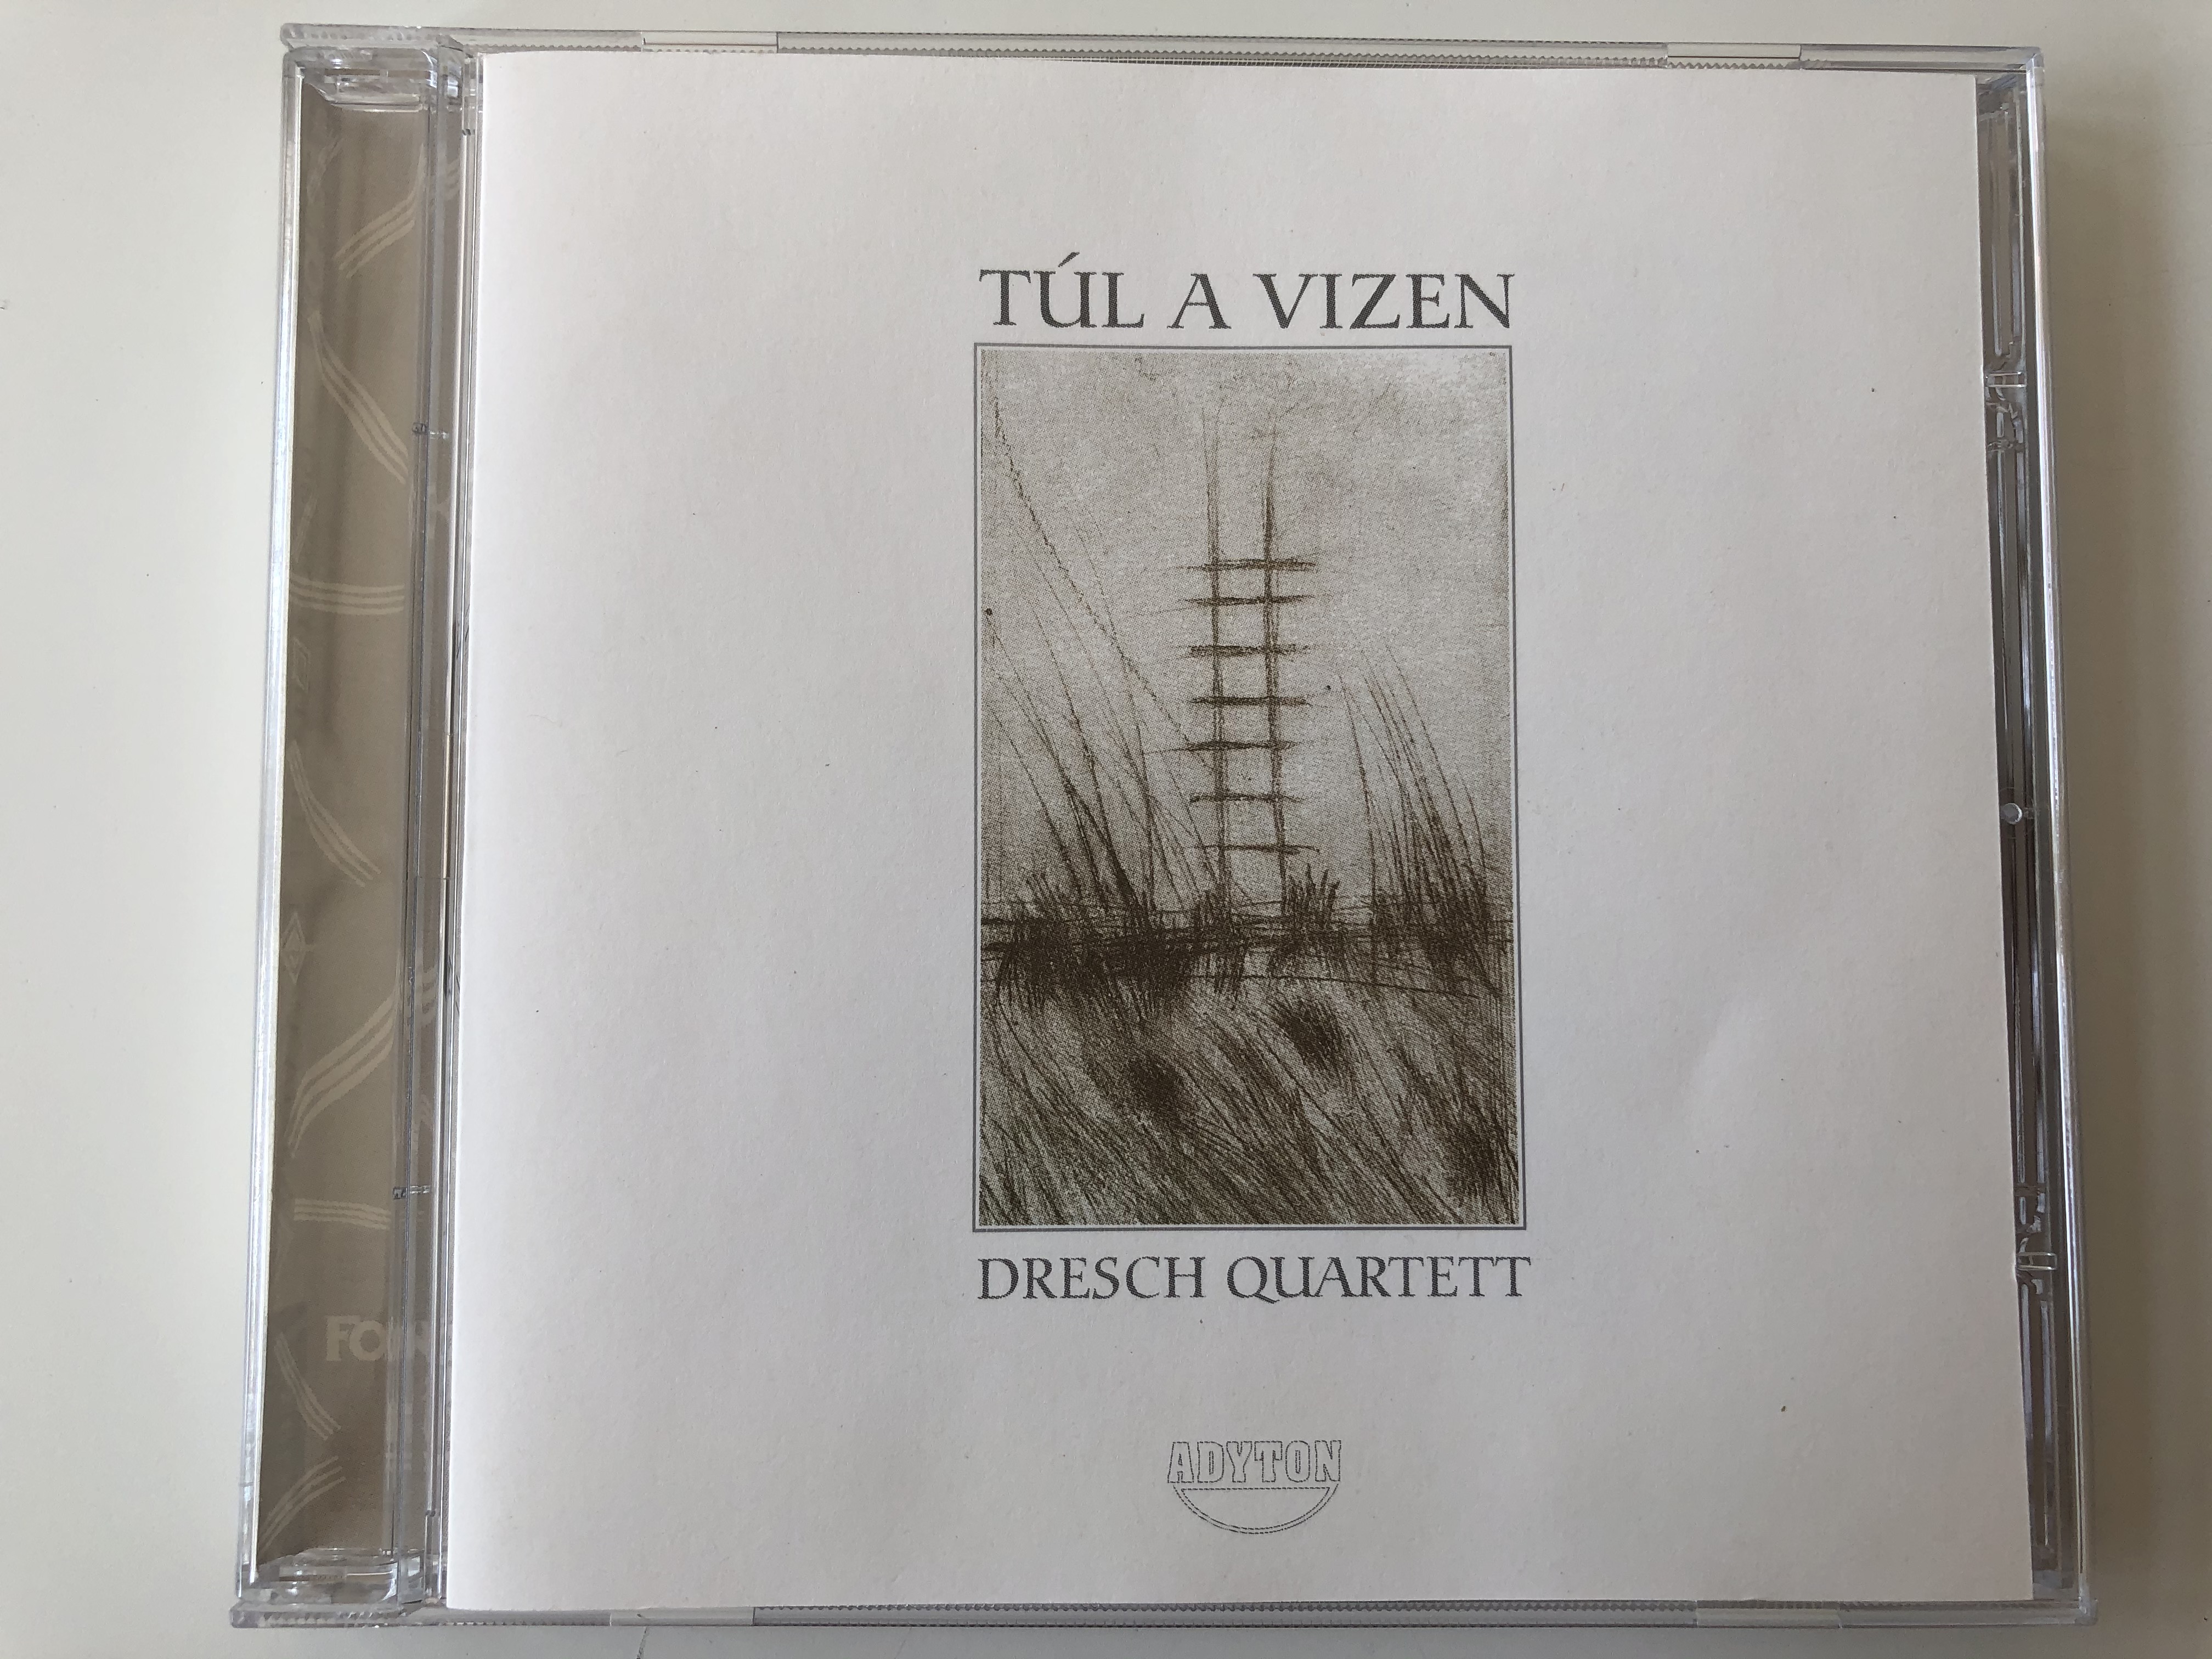 t-l-a-vizen-dresch-quartett-fon-records-audio-cd-1996-fa-013-2-1-.jpg